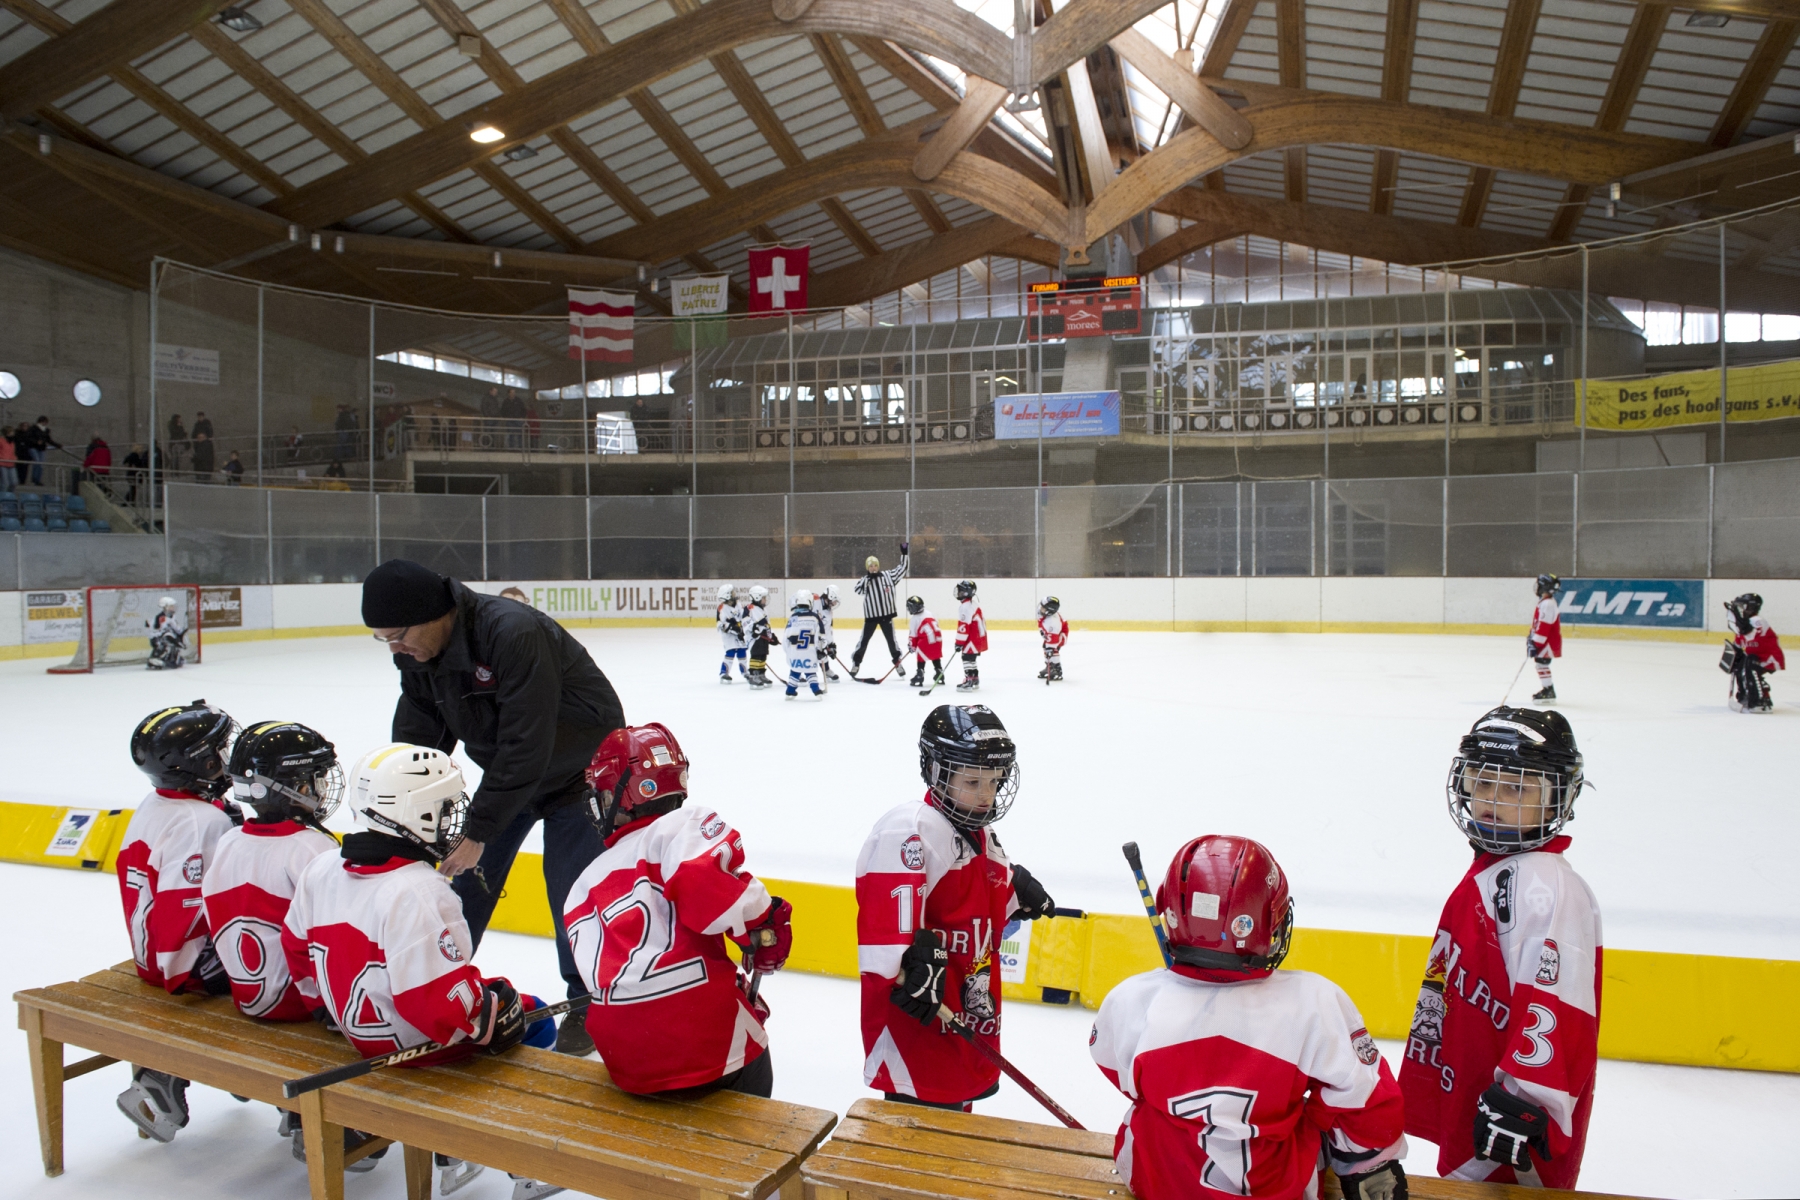 Principal utilisateur des Eaux-Minérales, le club de hockey sur glace paie à bon prix sa passion.